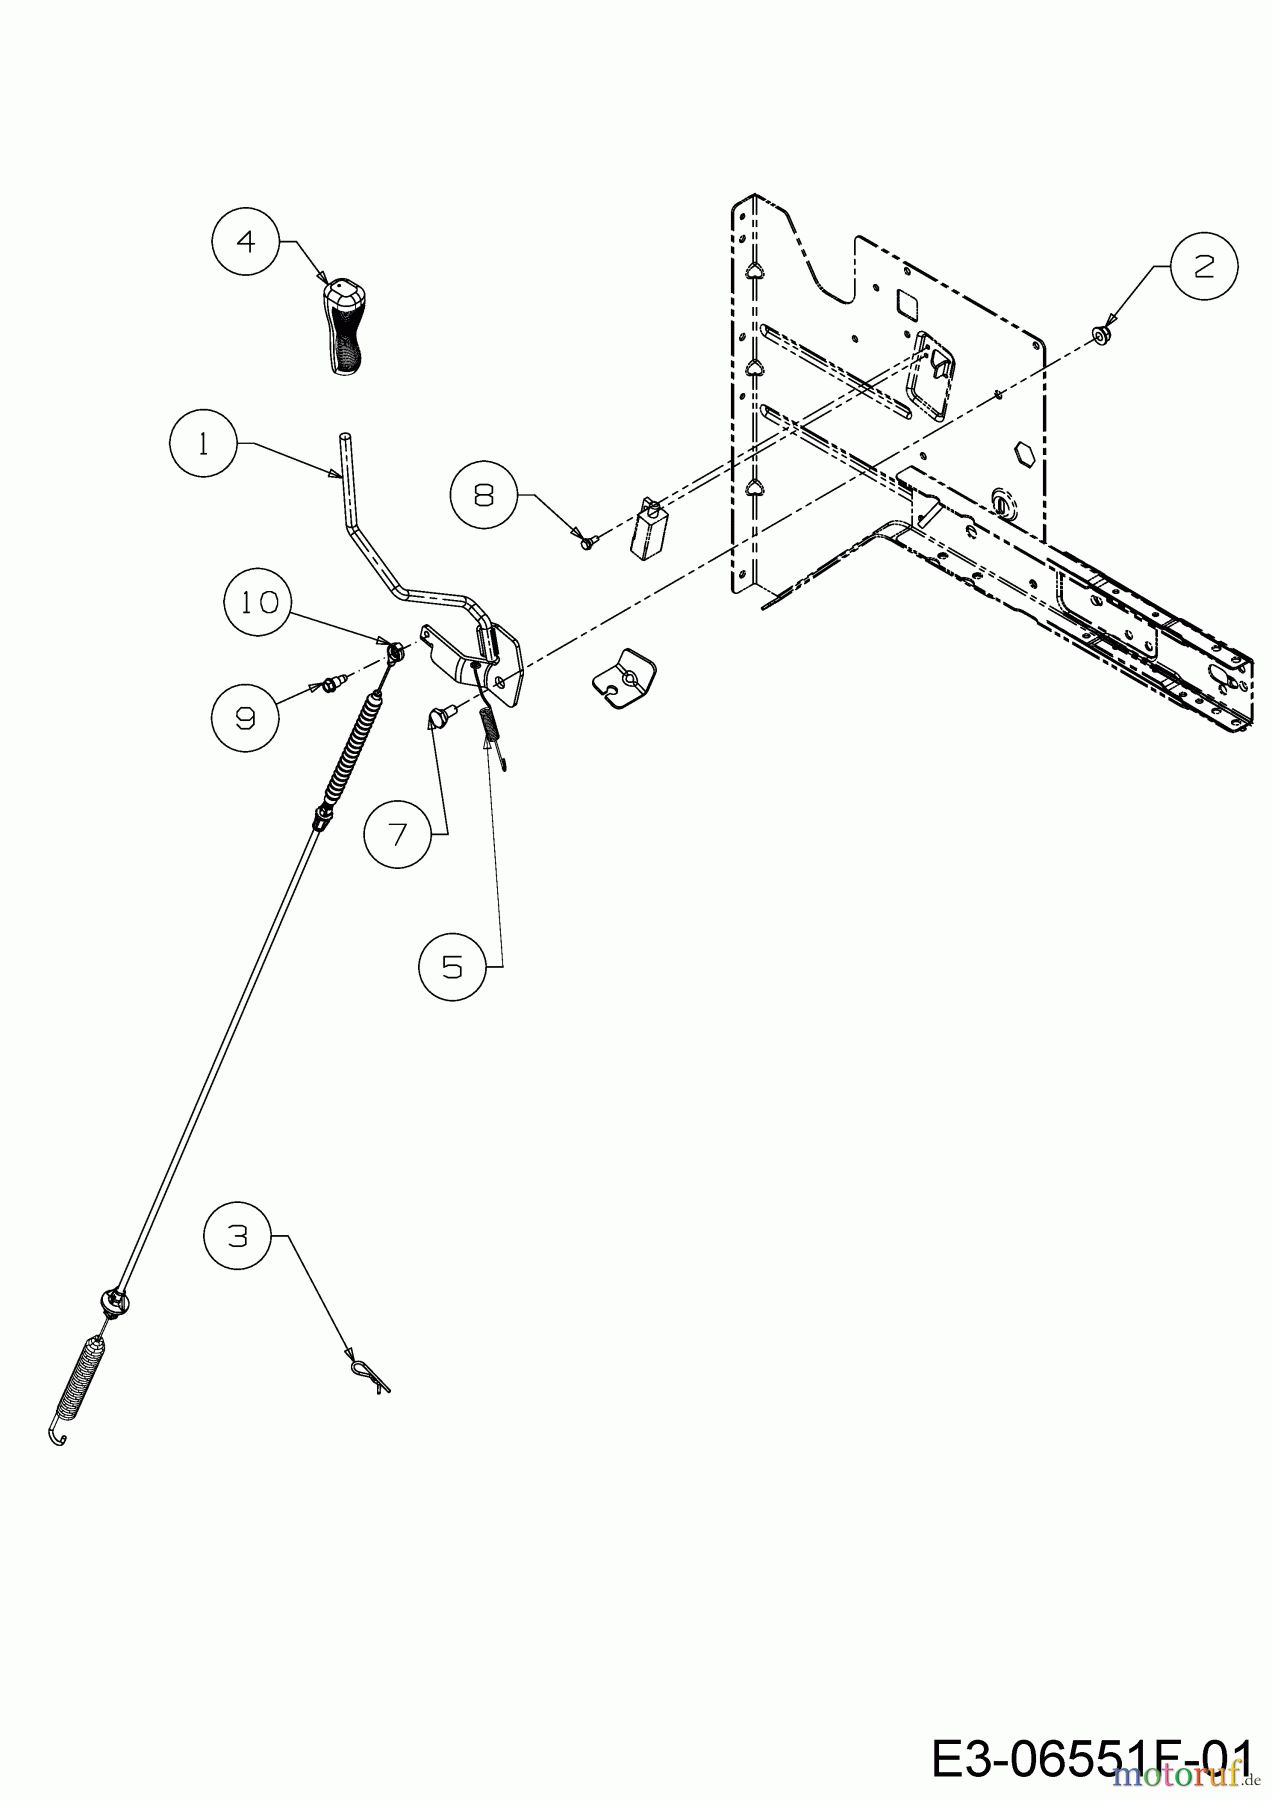  WOLF-Garten Expert Rasentraktoren E 13/92 T 13I2765E650  (2018) Mähwerkseinschaltung